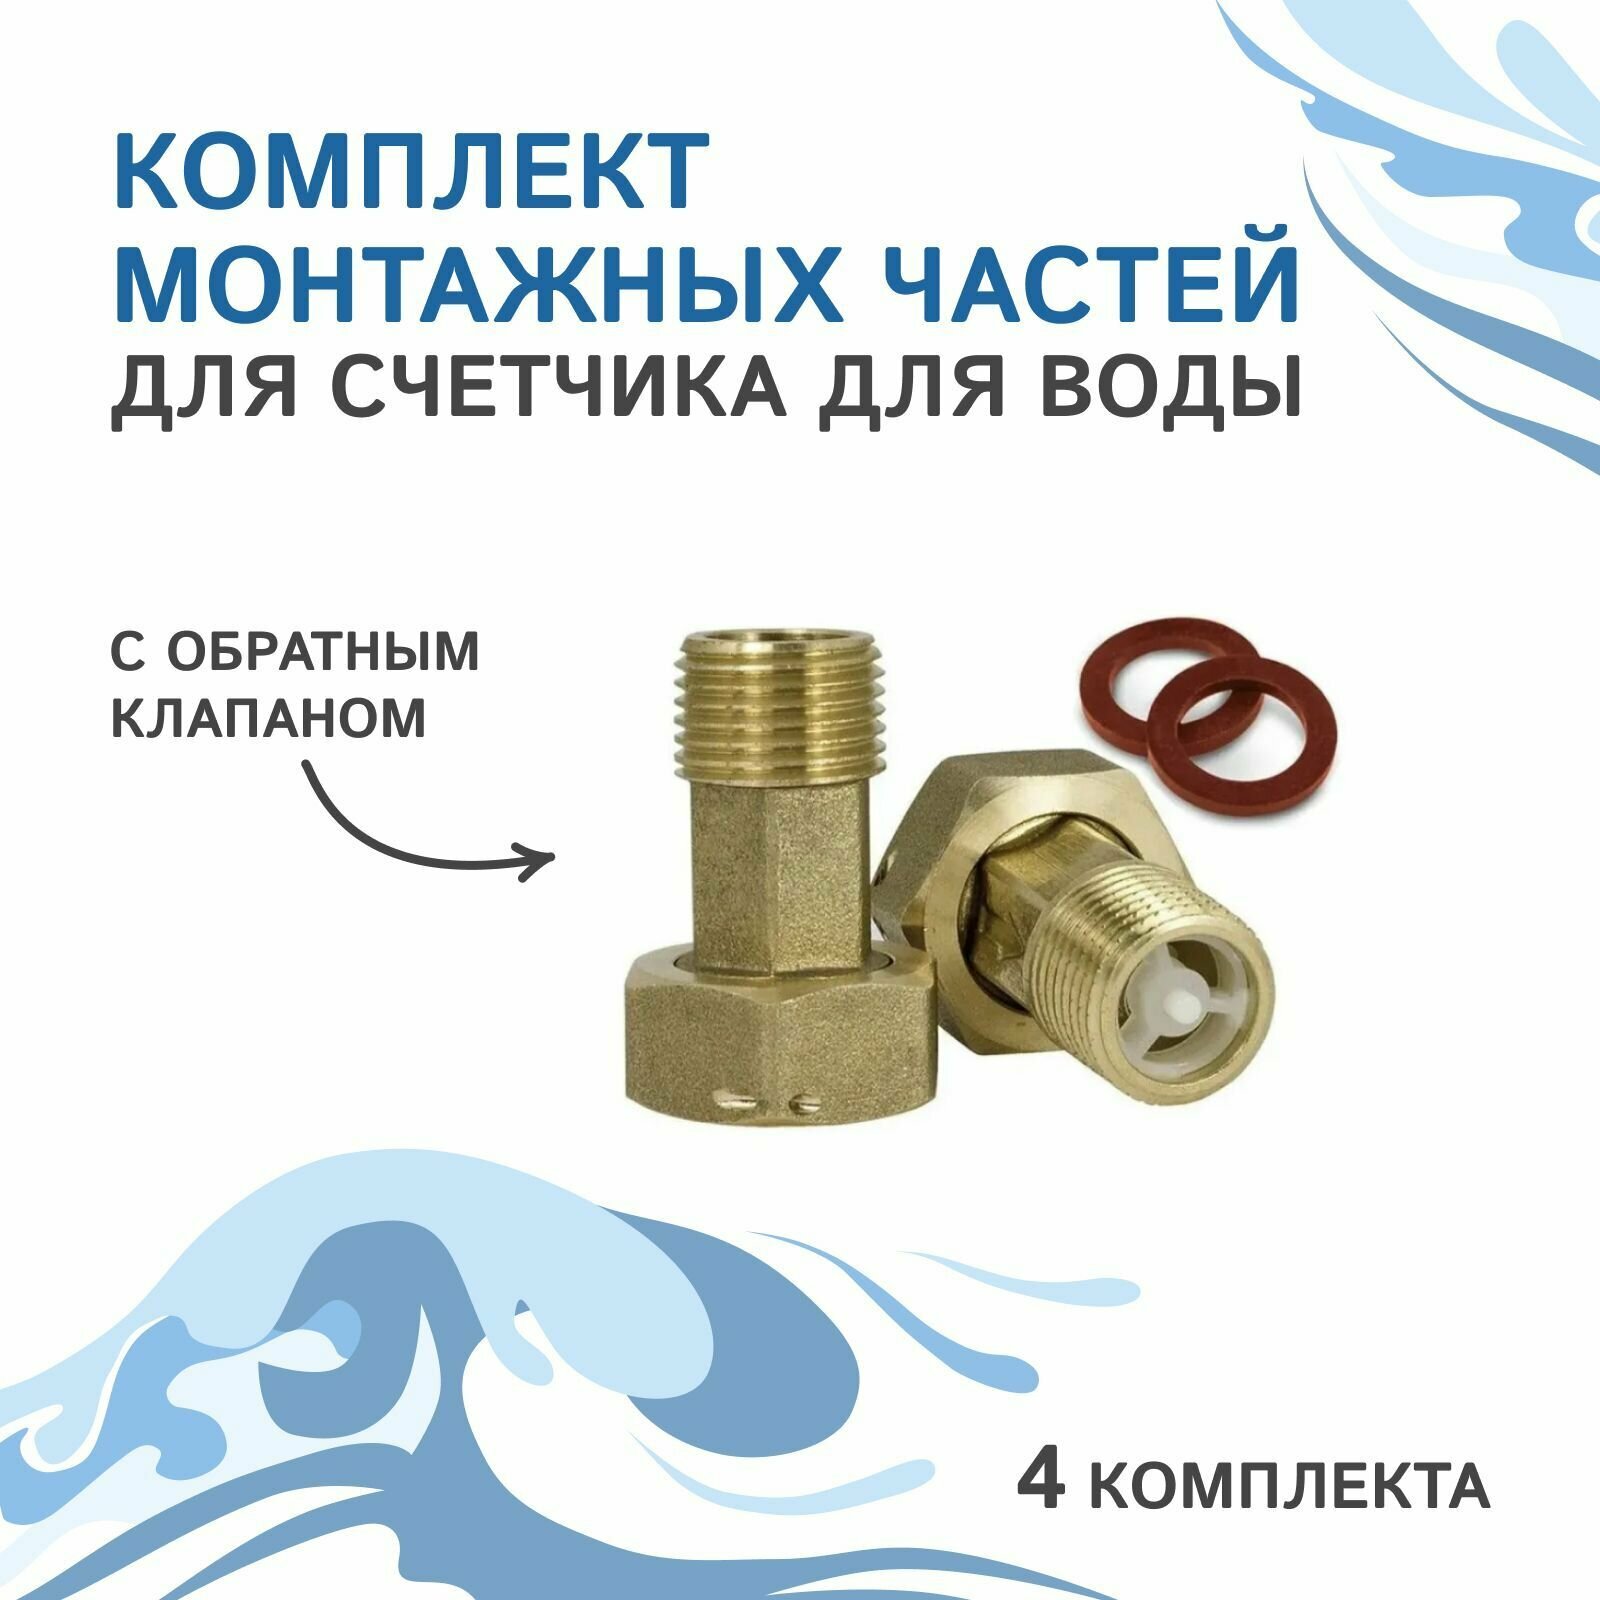 Комплект монтажных частей для счетчика для воды с обратным клапаном 2 комп (4 шт.).